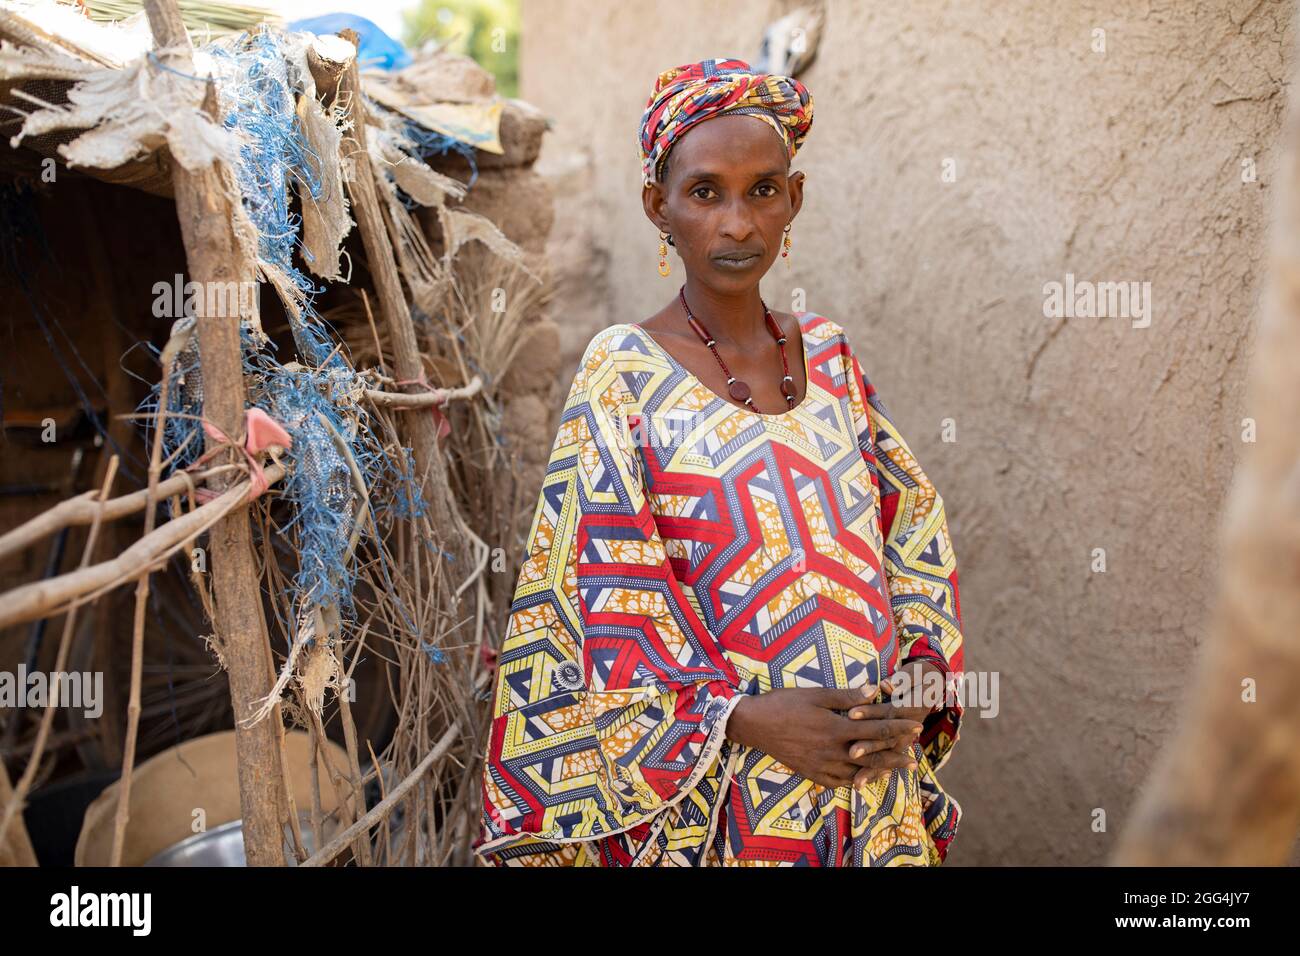 Aichata Sidibe (âge inconnu) est la mère de trois enfants, qui attend un quatrième. Ils vivent dans une petite hutte à chambre simple dans le village de Siemana, au Mali, alors que son mari a quitté la région pour trouver du travail. Trouver suffisamment de nourriture pour nourrir la famille présente un défi constant, et les enfants ont souvent faim. « lorsque les enfants ne reçoivent pas de nourriture, ils tombent malades », a-t-elle déclaré. « ce n’est pas pour très longtemps, mais je dois alors compter sur Dieu. » Crise du Sahel 2021 ; Barouéli cercle, Mali. 23 févr. 2021. Photo de Jake Lyell. Banque D'Images